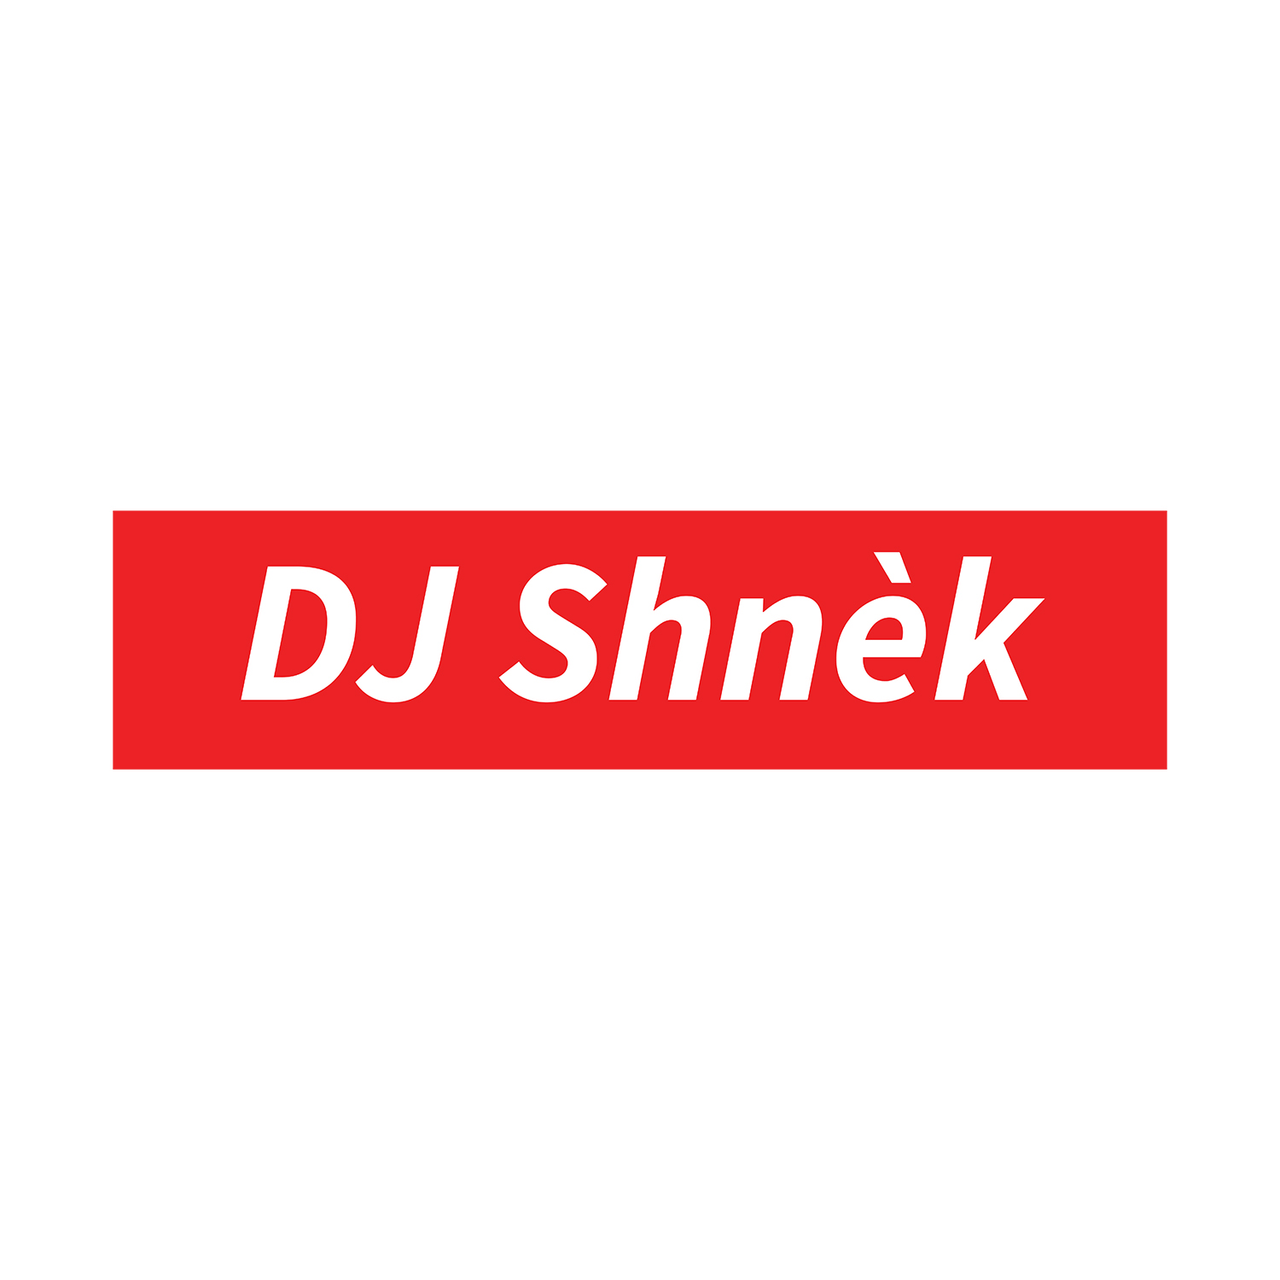 T-SHIRT DJ